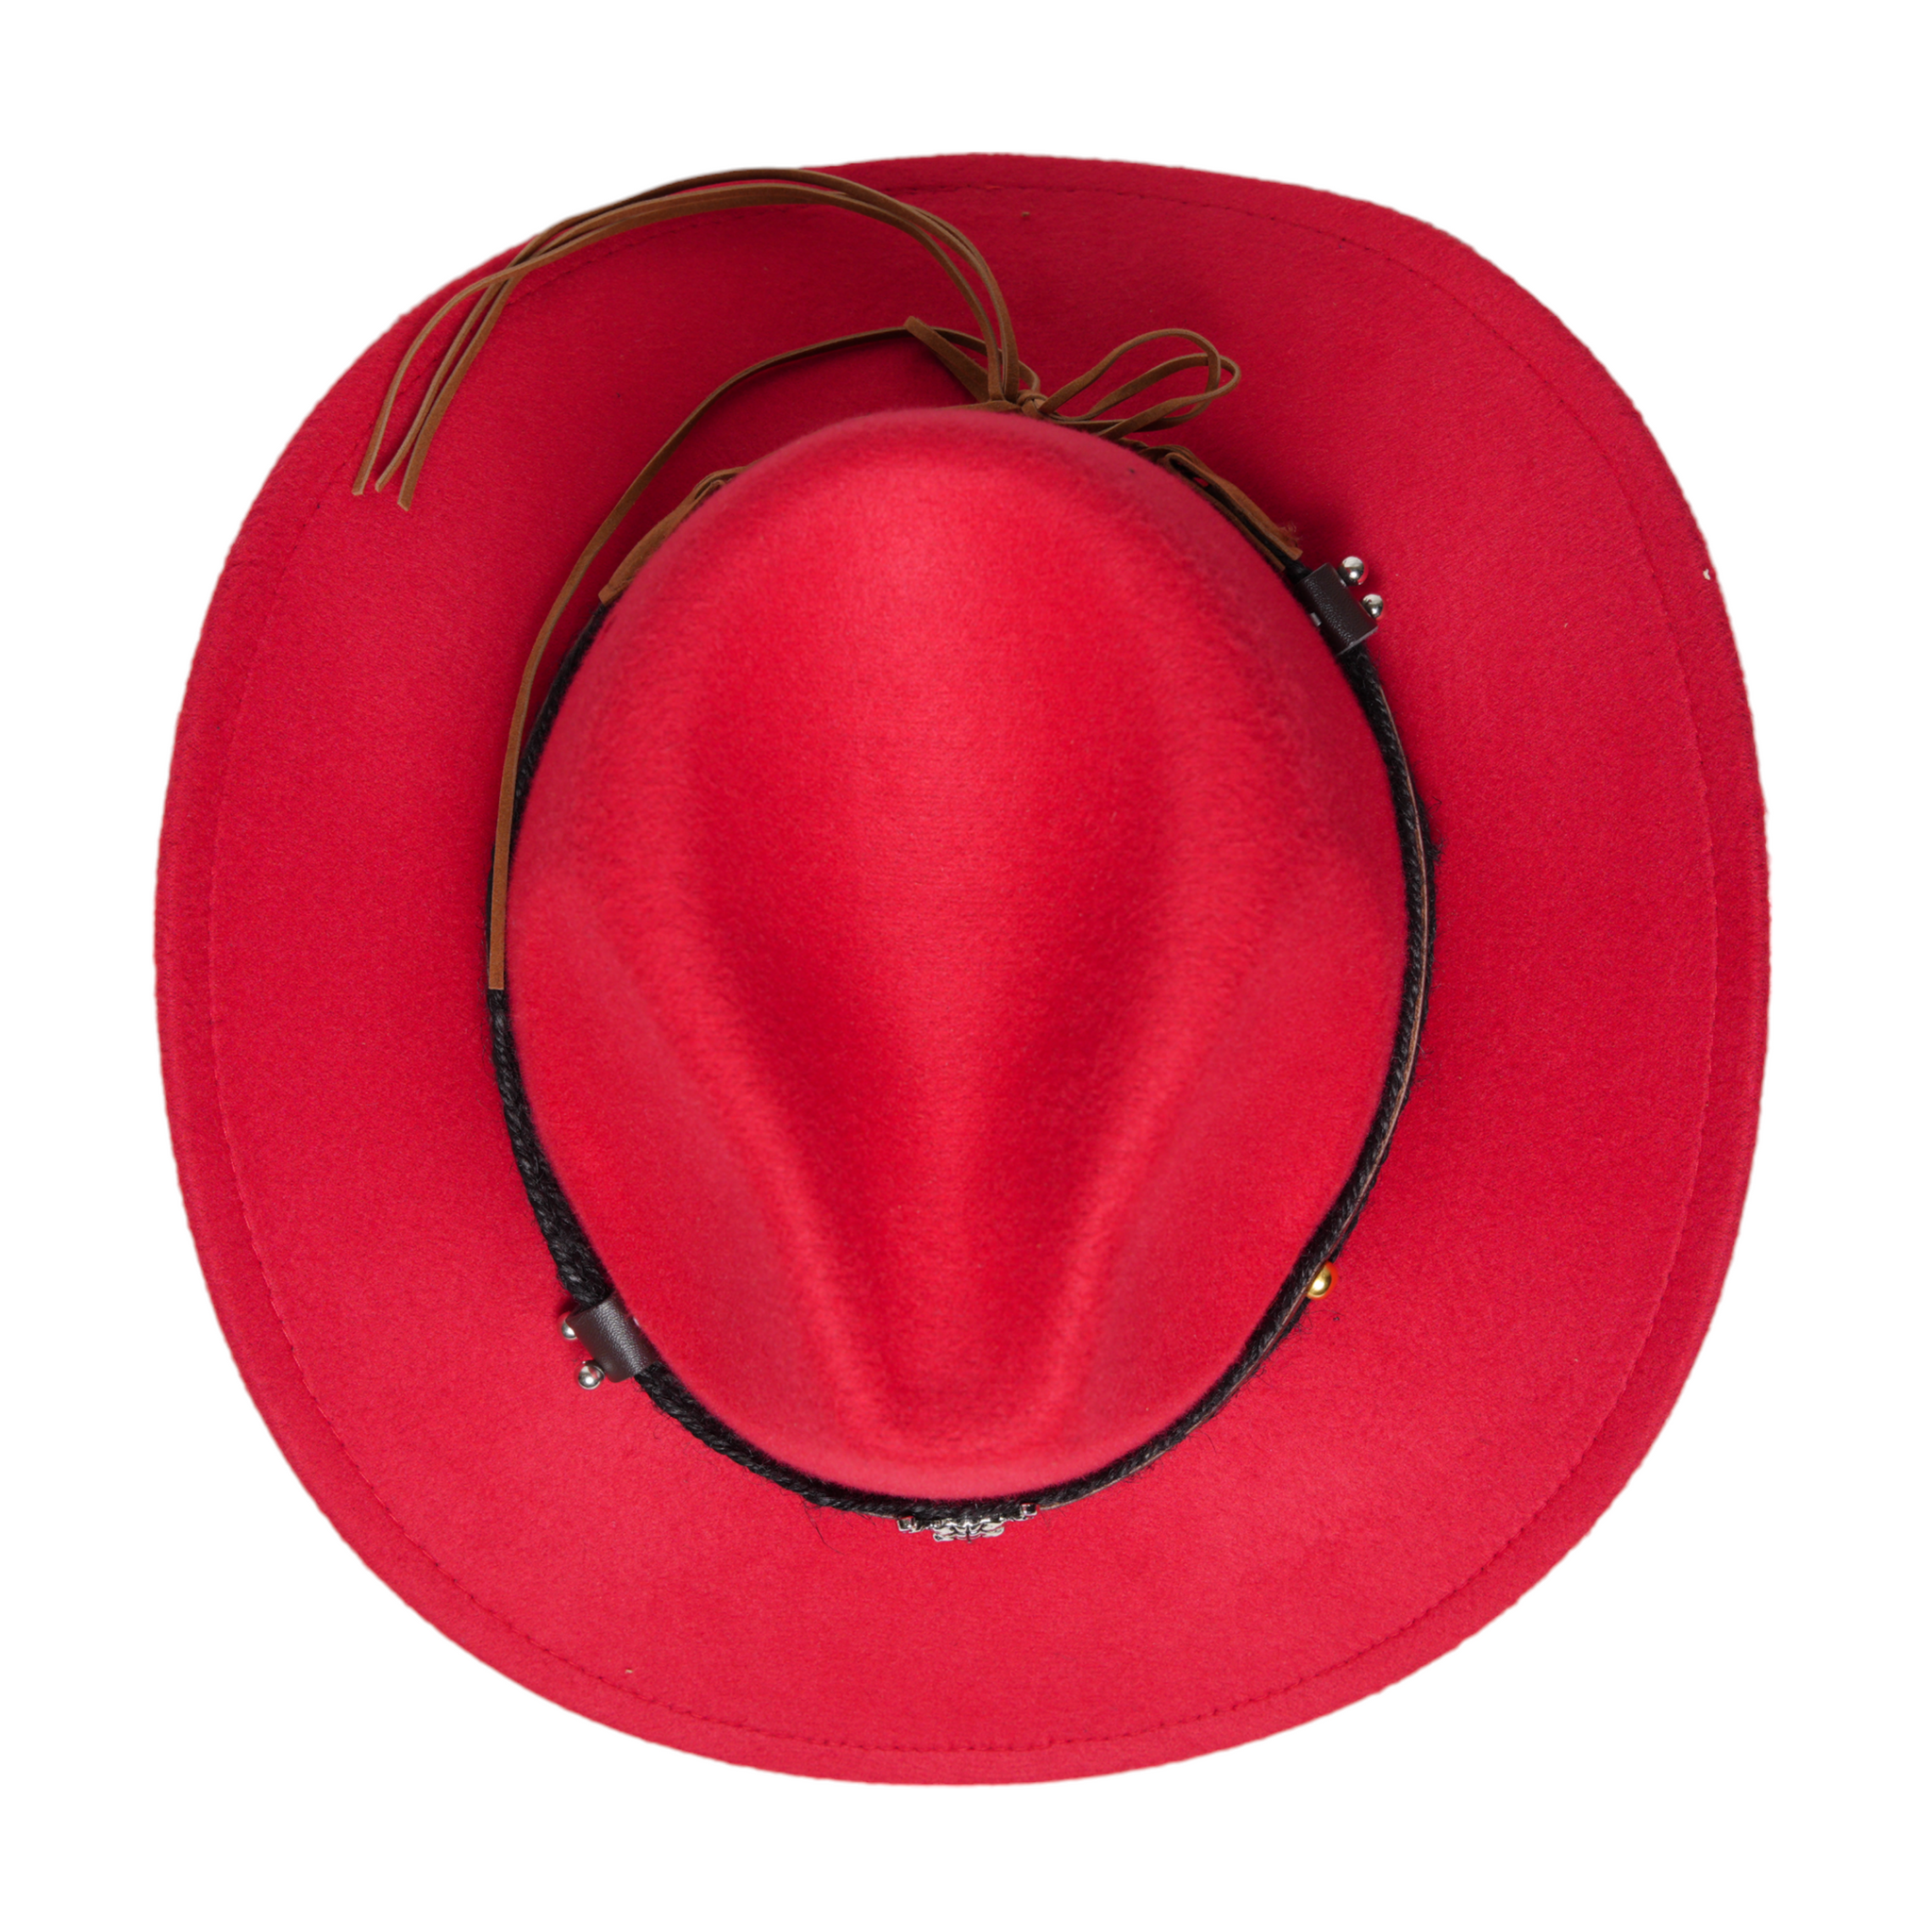 Chokore American Cowhead cowboy Hat (red)